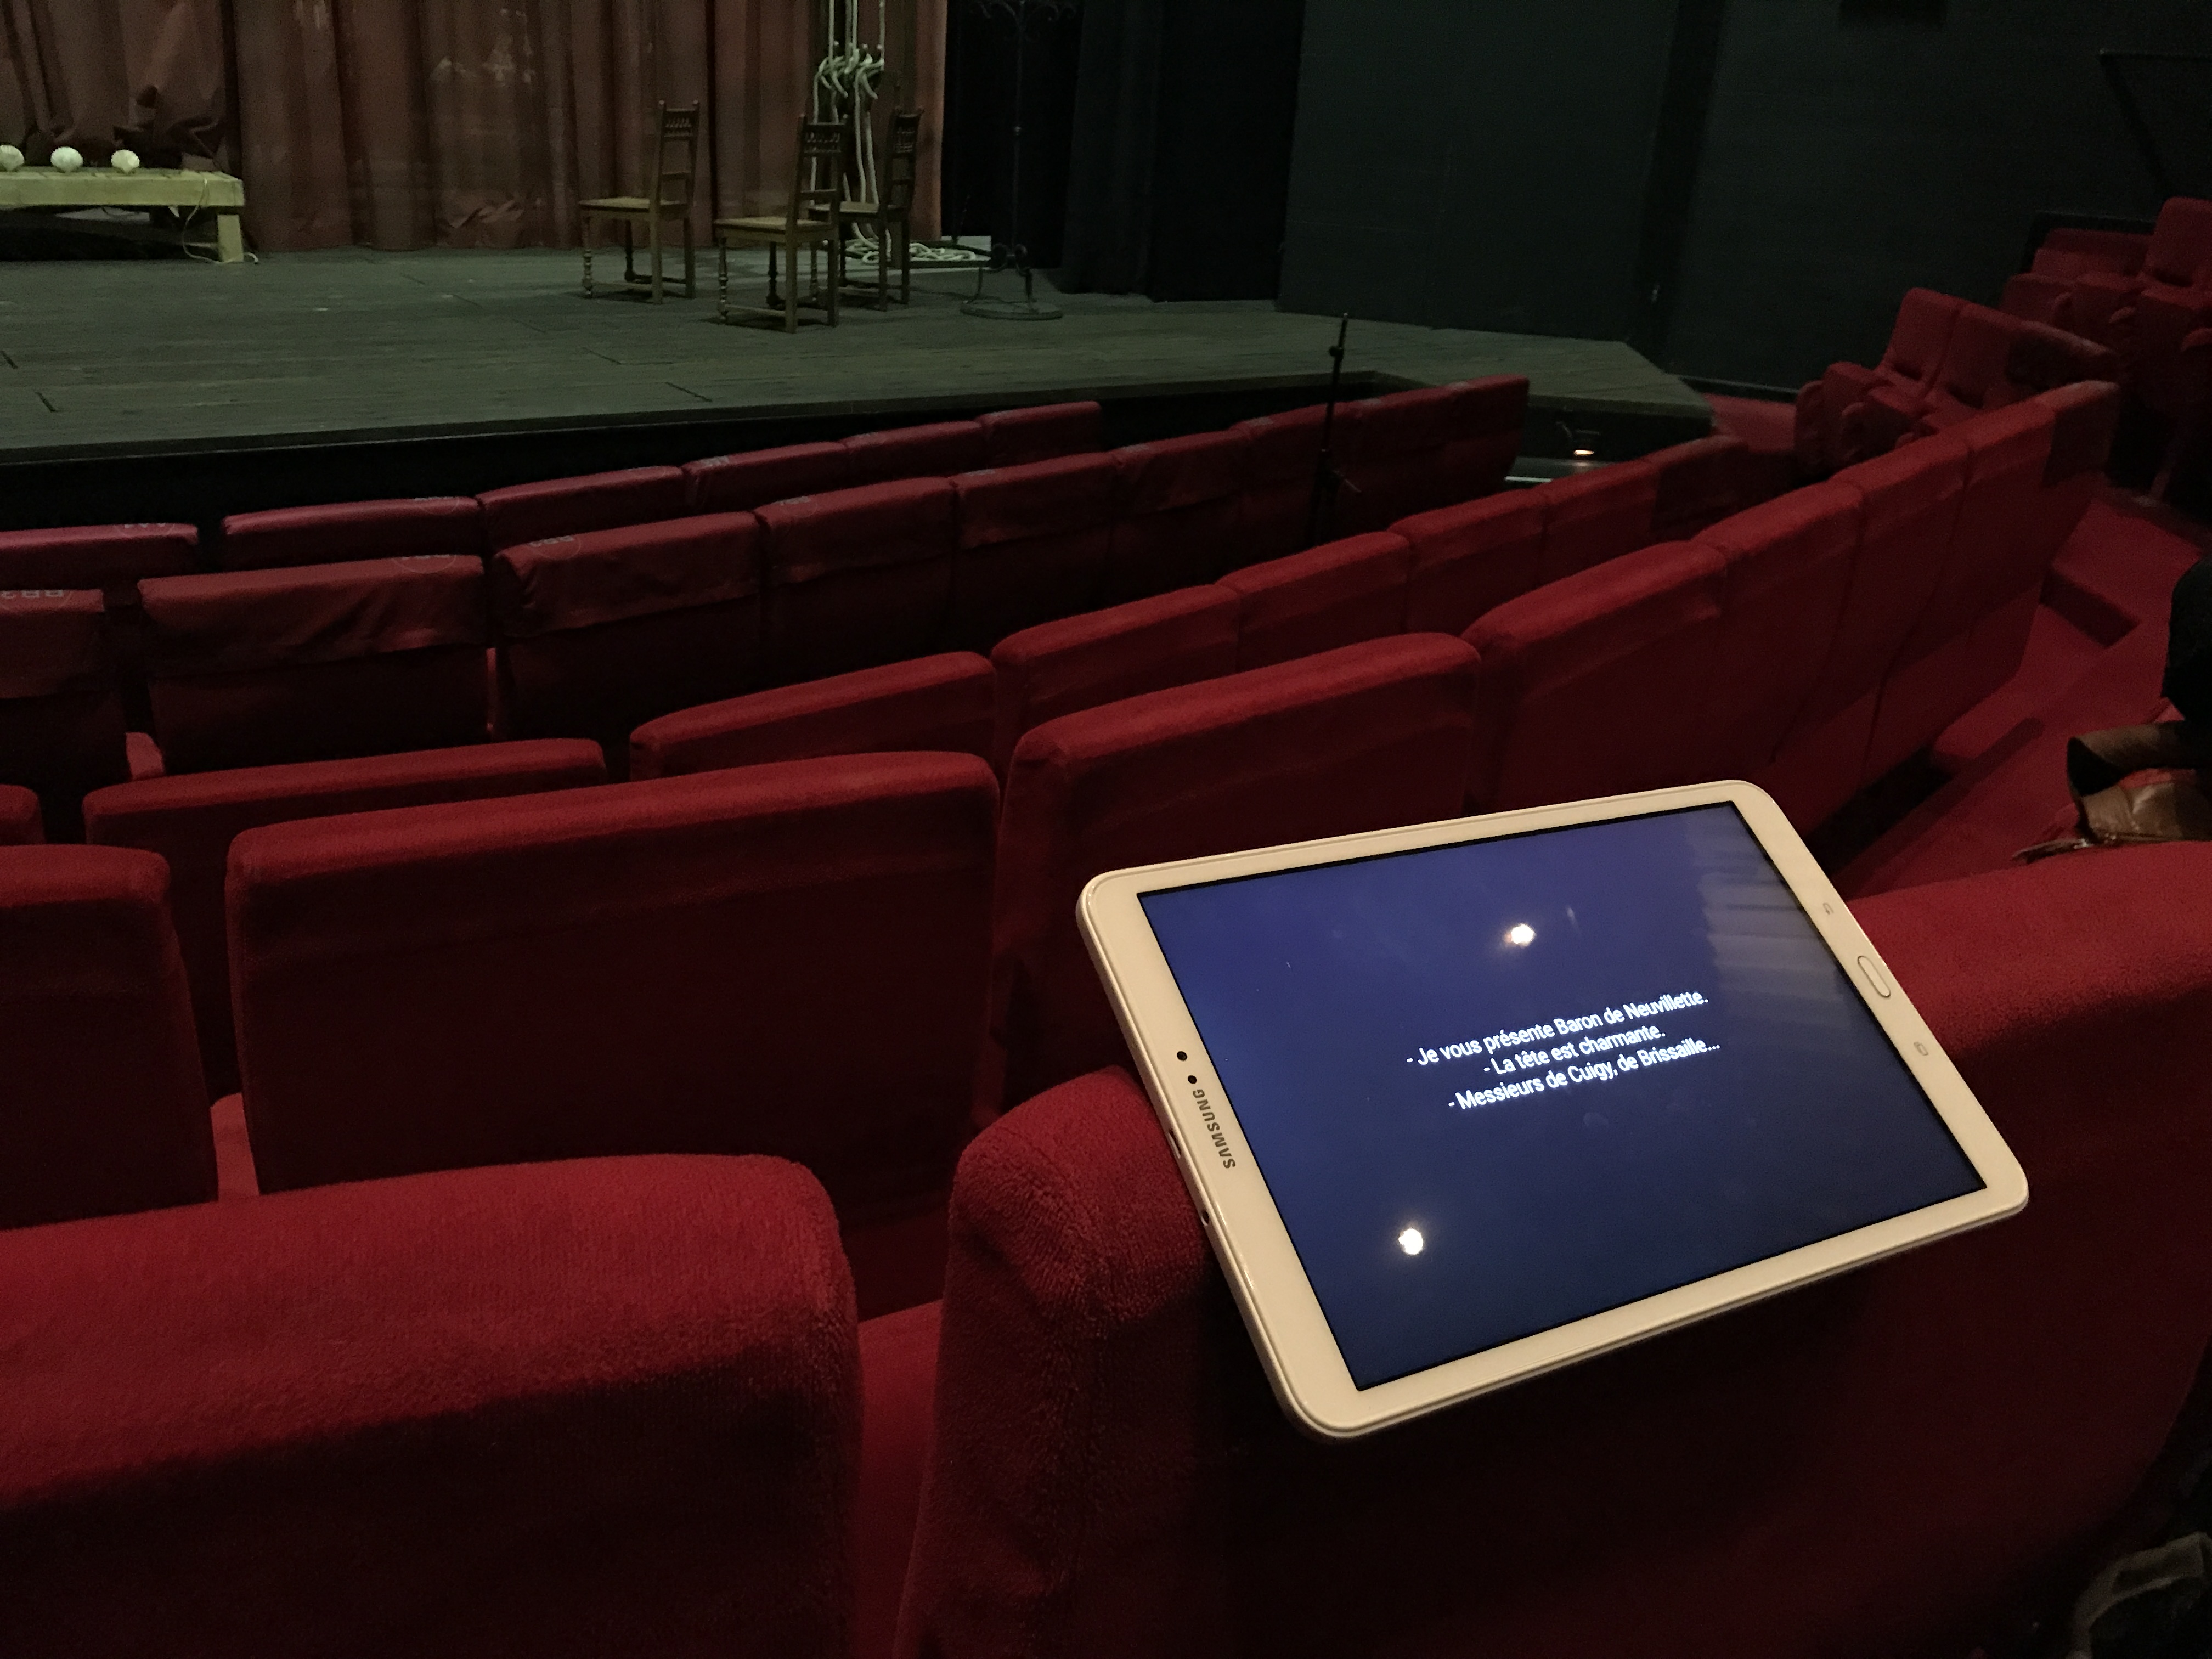 Une tablette posée en équilibre sur le dossier d’un siège en velours rouge dans une salle de théâtre vide. Au se-cond plan, la scène. La tablette est allumée, trois courtes phrases s’affichent sur l’écran.